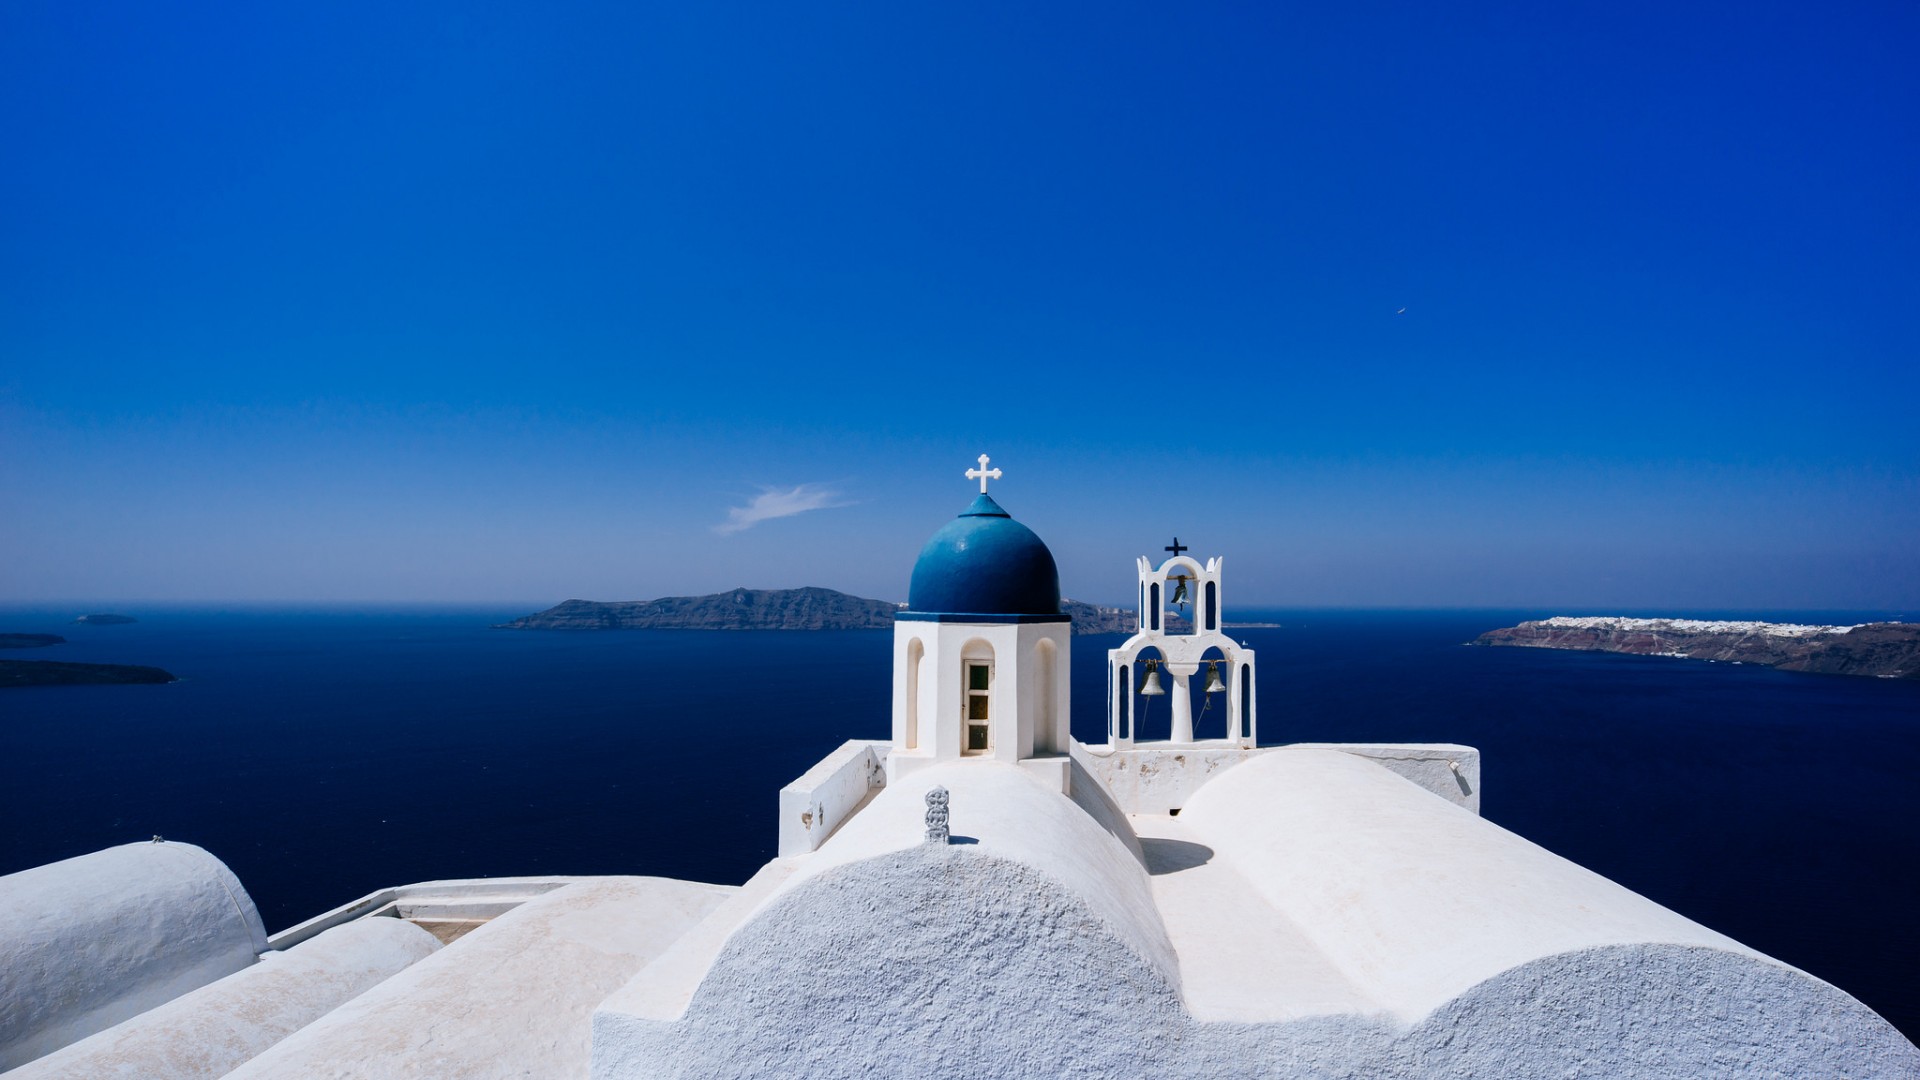 希腊,圣托里尼,蒂朗岛,天空,风景桌面壁纸